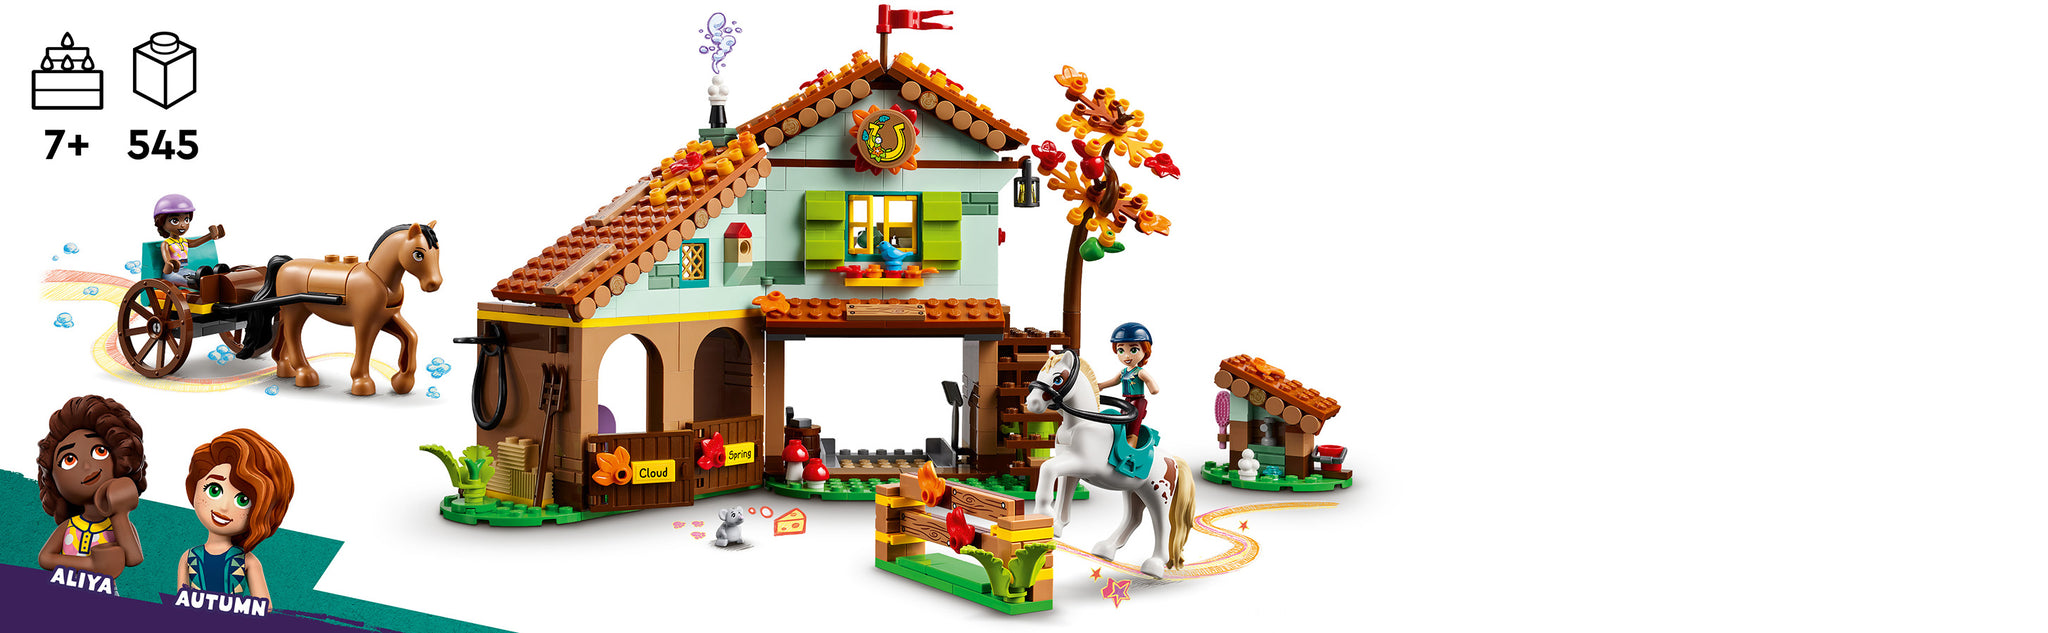 LEGO 41745 Pferdestall im Herbst